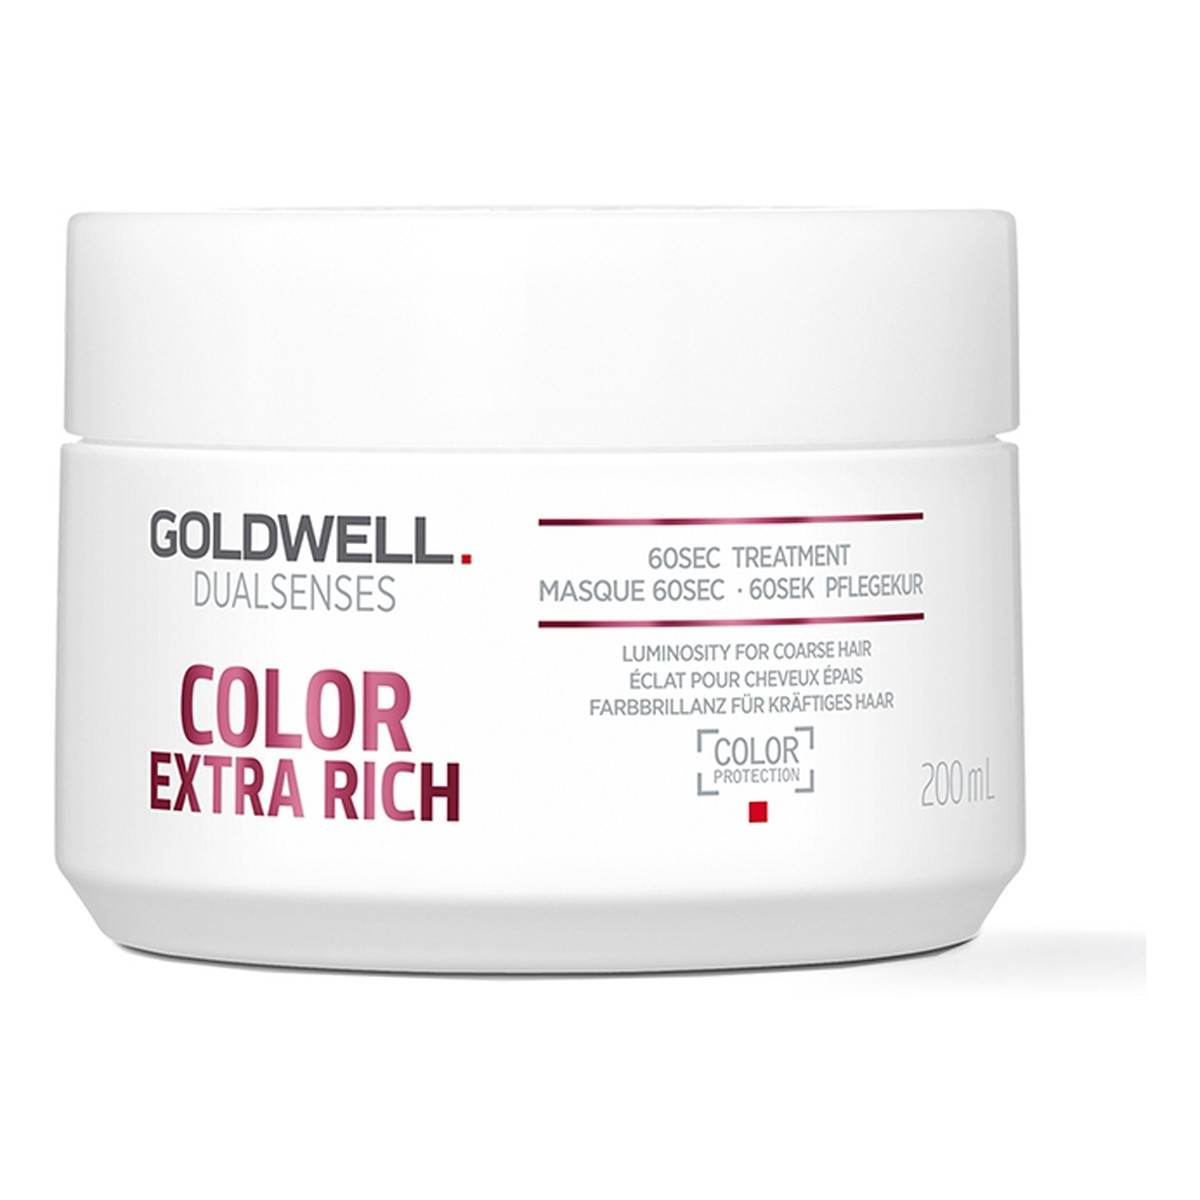 Goldwell Dualsenses Color Extra Rich 60-sekundowa kuracja regenerująca do grubych włosów farbowanych 200ml